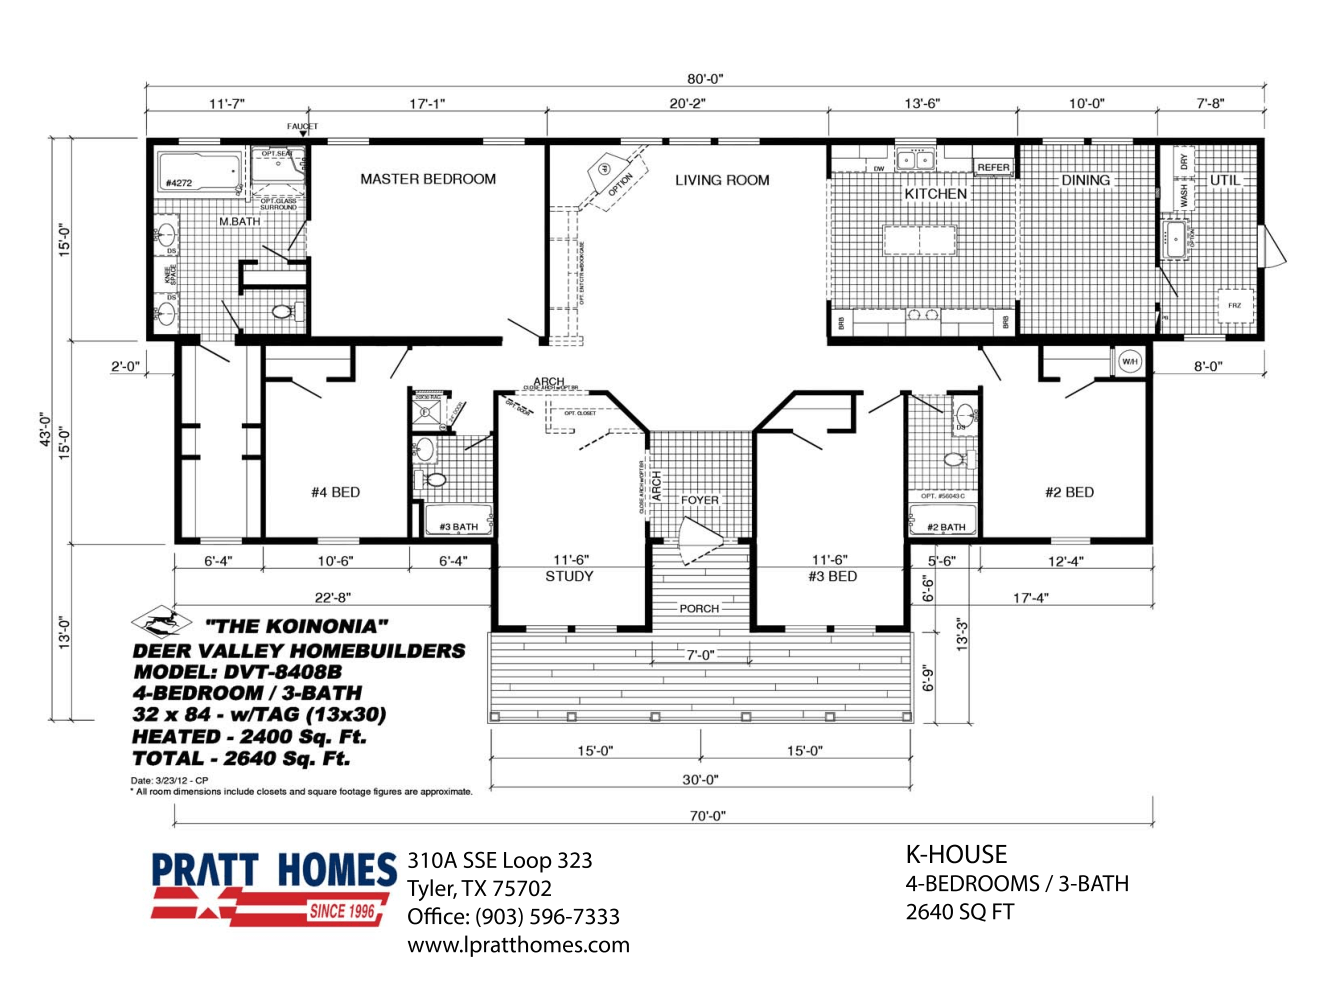 Floor Plan for house model K-House Pratt Homes, Tyler, Texas